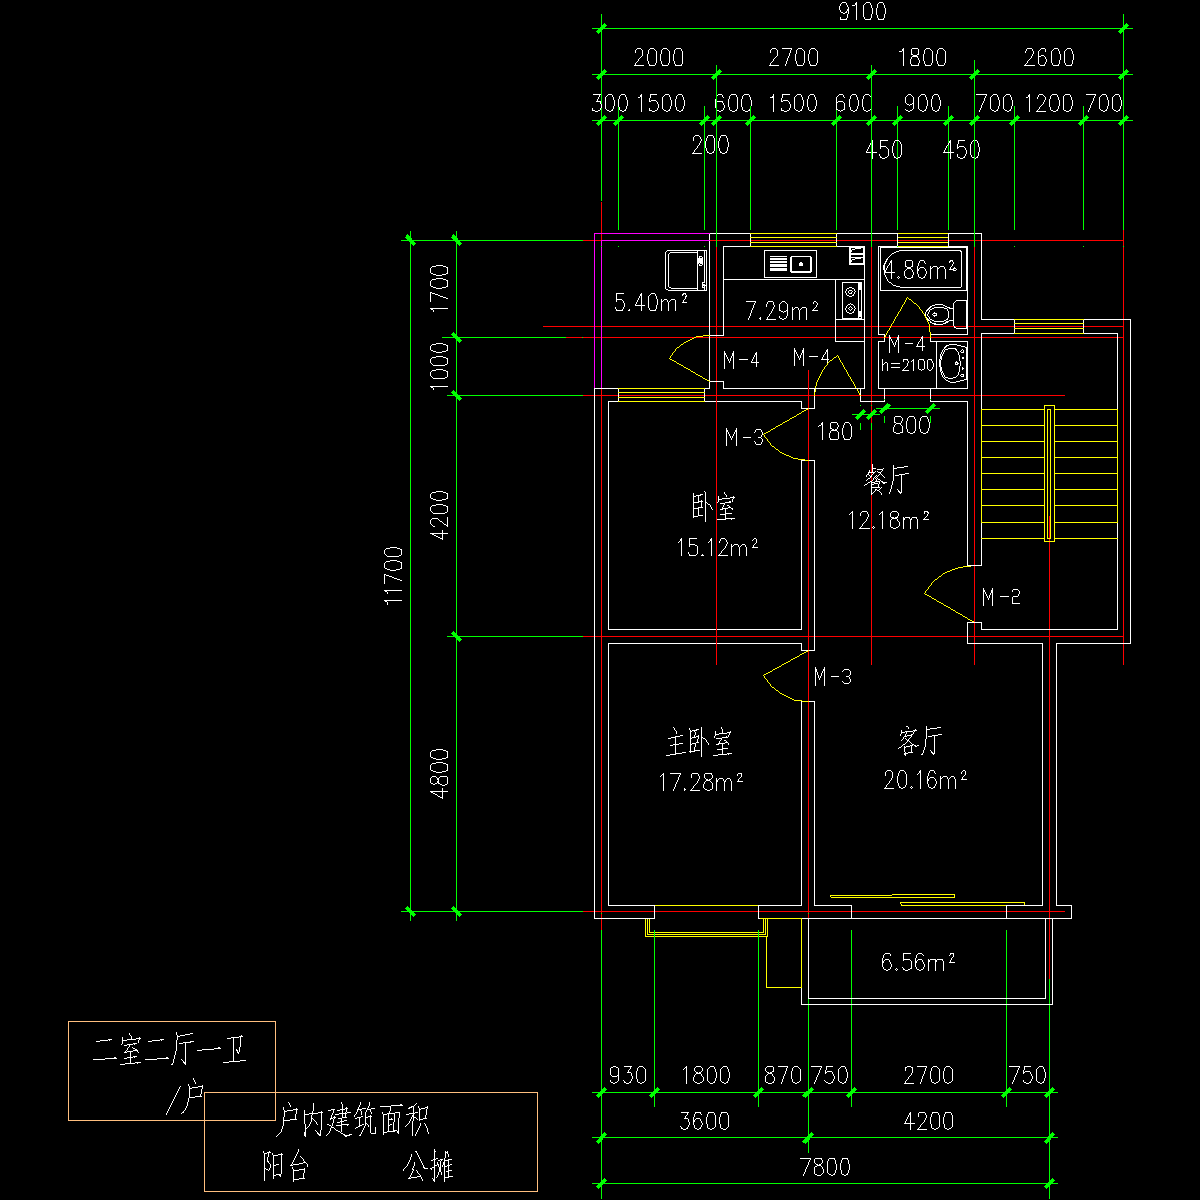 板式多层单户二室二厅一卫户型CAD图纸 - 1